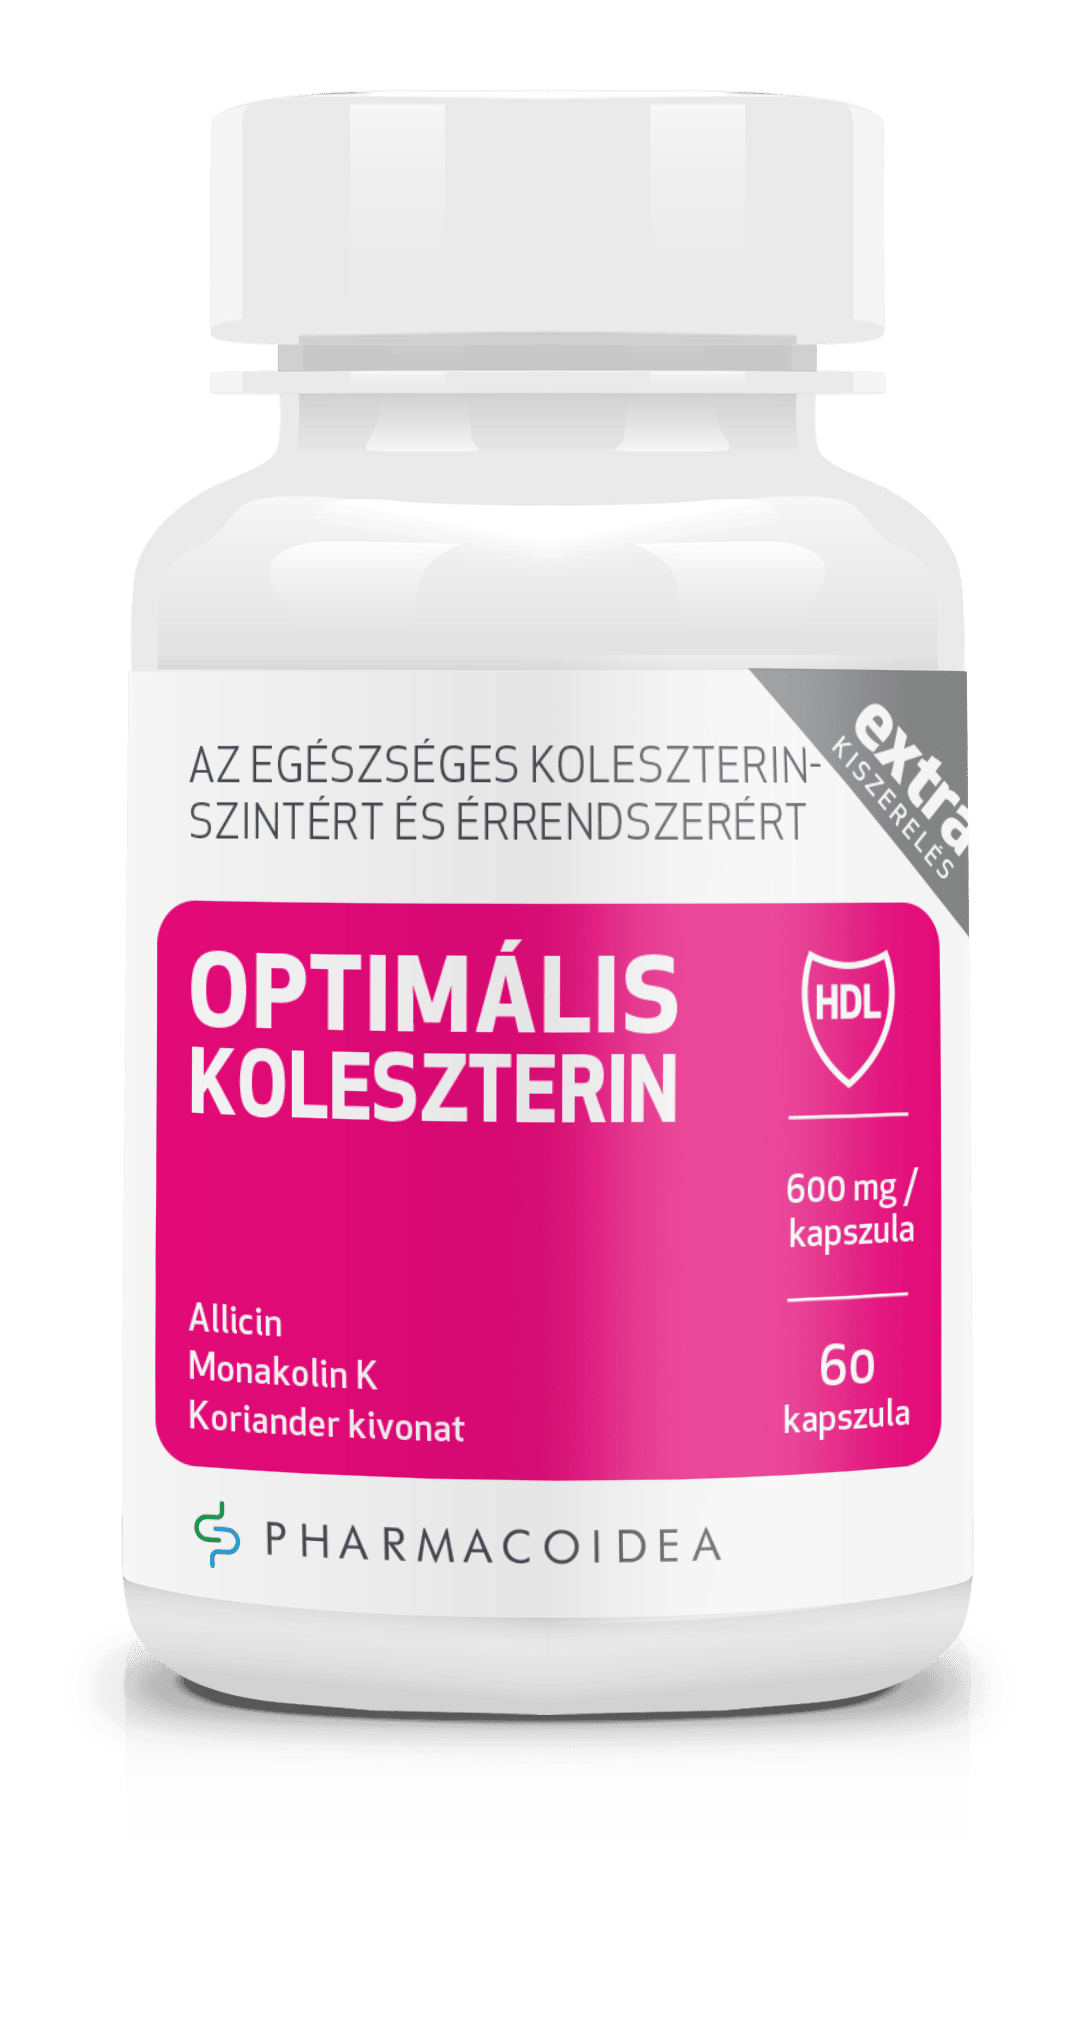 Pharmacoidea Optimális koleszterin extra - 60 db 